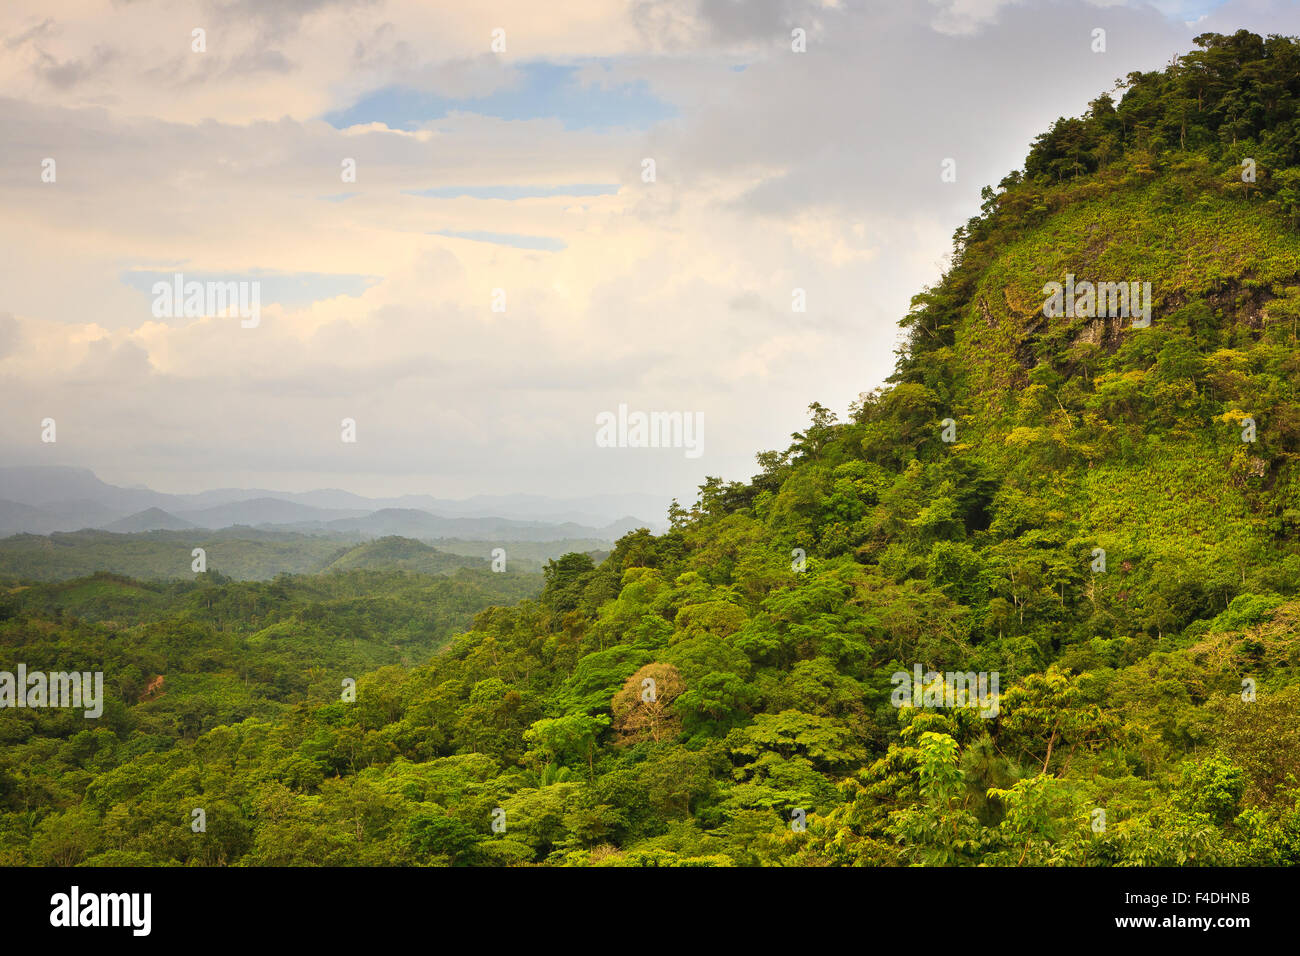 Rain forest below Cerro la Vieja (upper right) in Chiguiri Arriba, Cordillera Central, Cocle province, Republic of Panama. Stock Photo